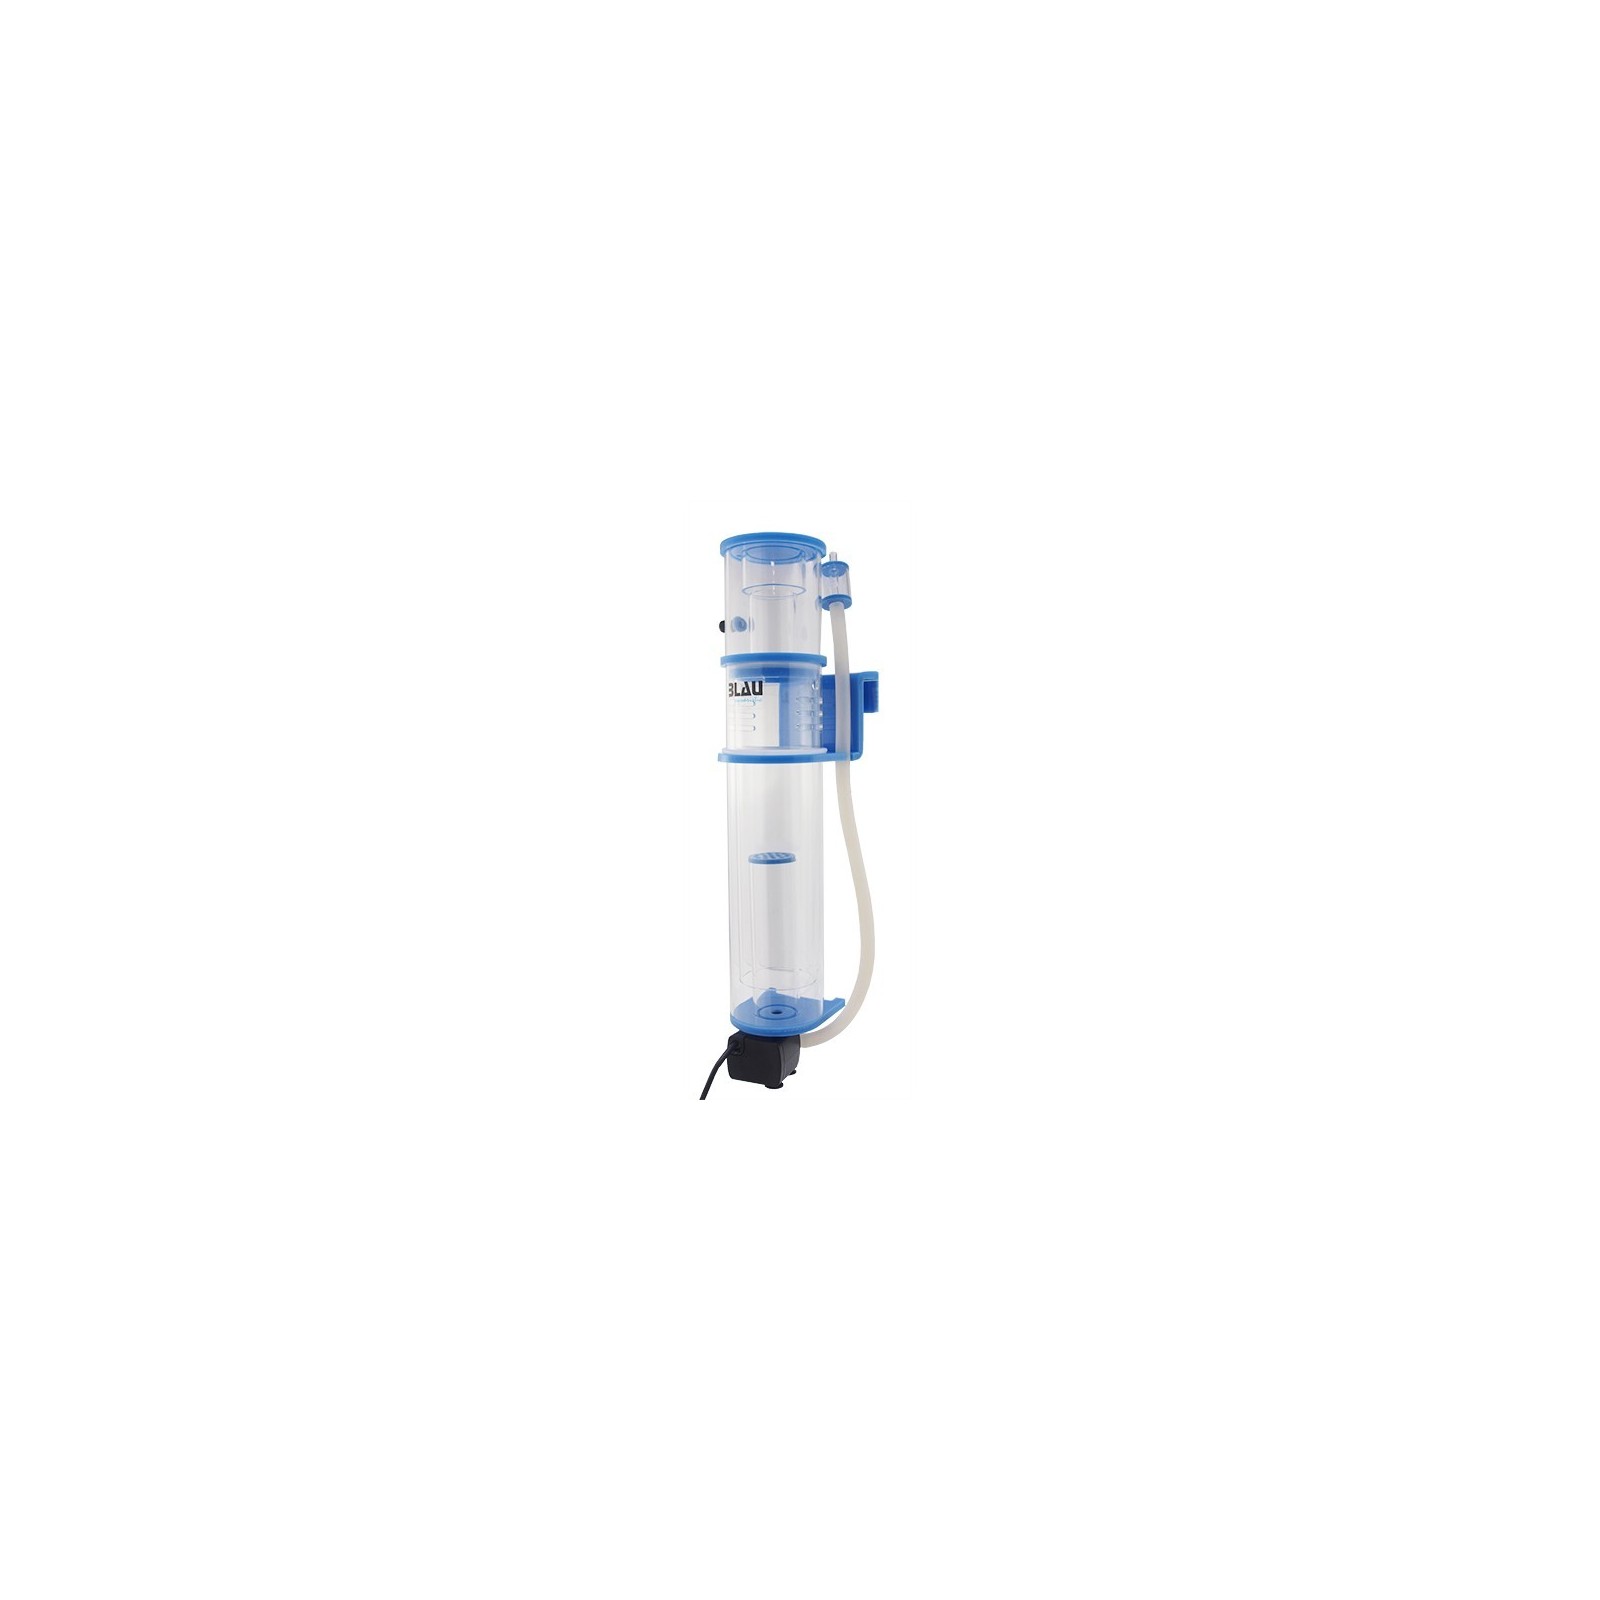 Blau Aquaristic Skimmer SCUMA 0635 INT schiumatoio per acquario marino fino a 120 litri